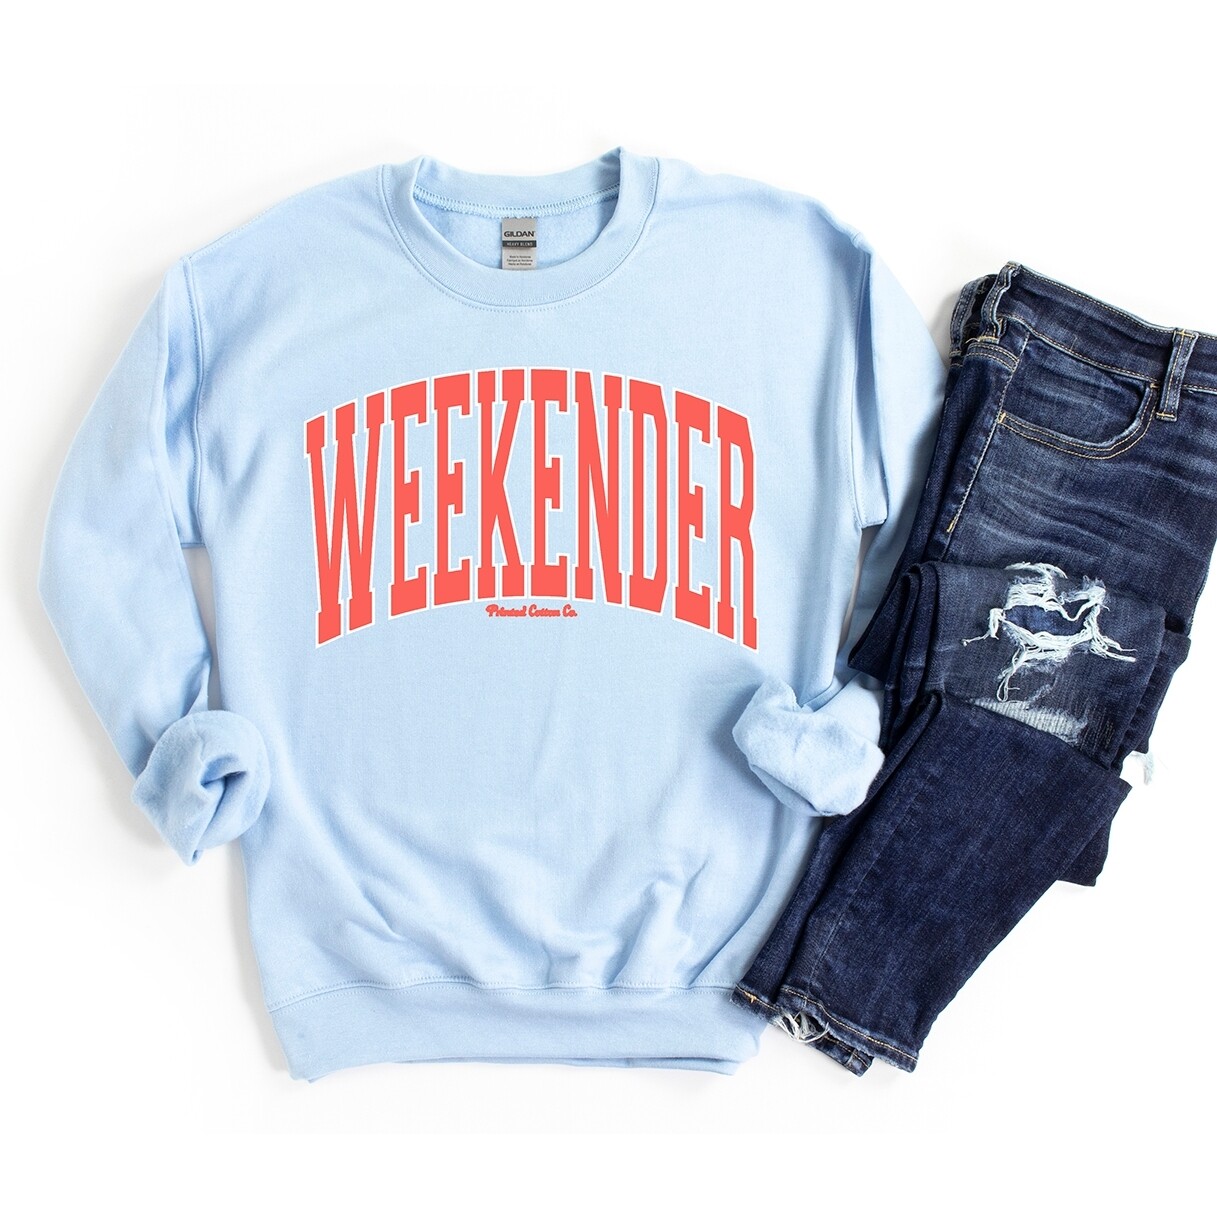 Light Blue "Weekender" Sweatshirt